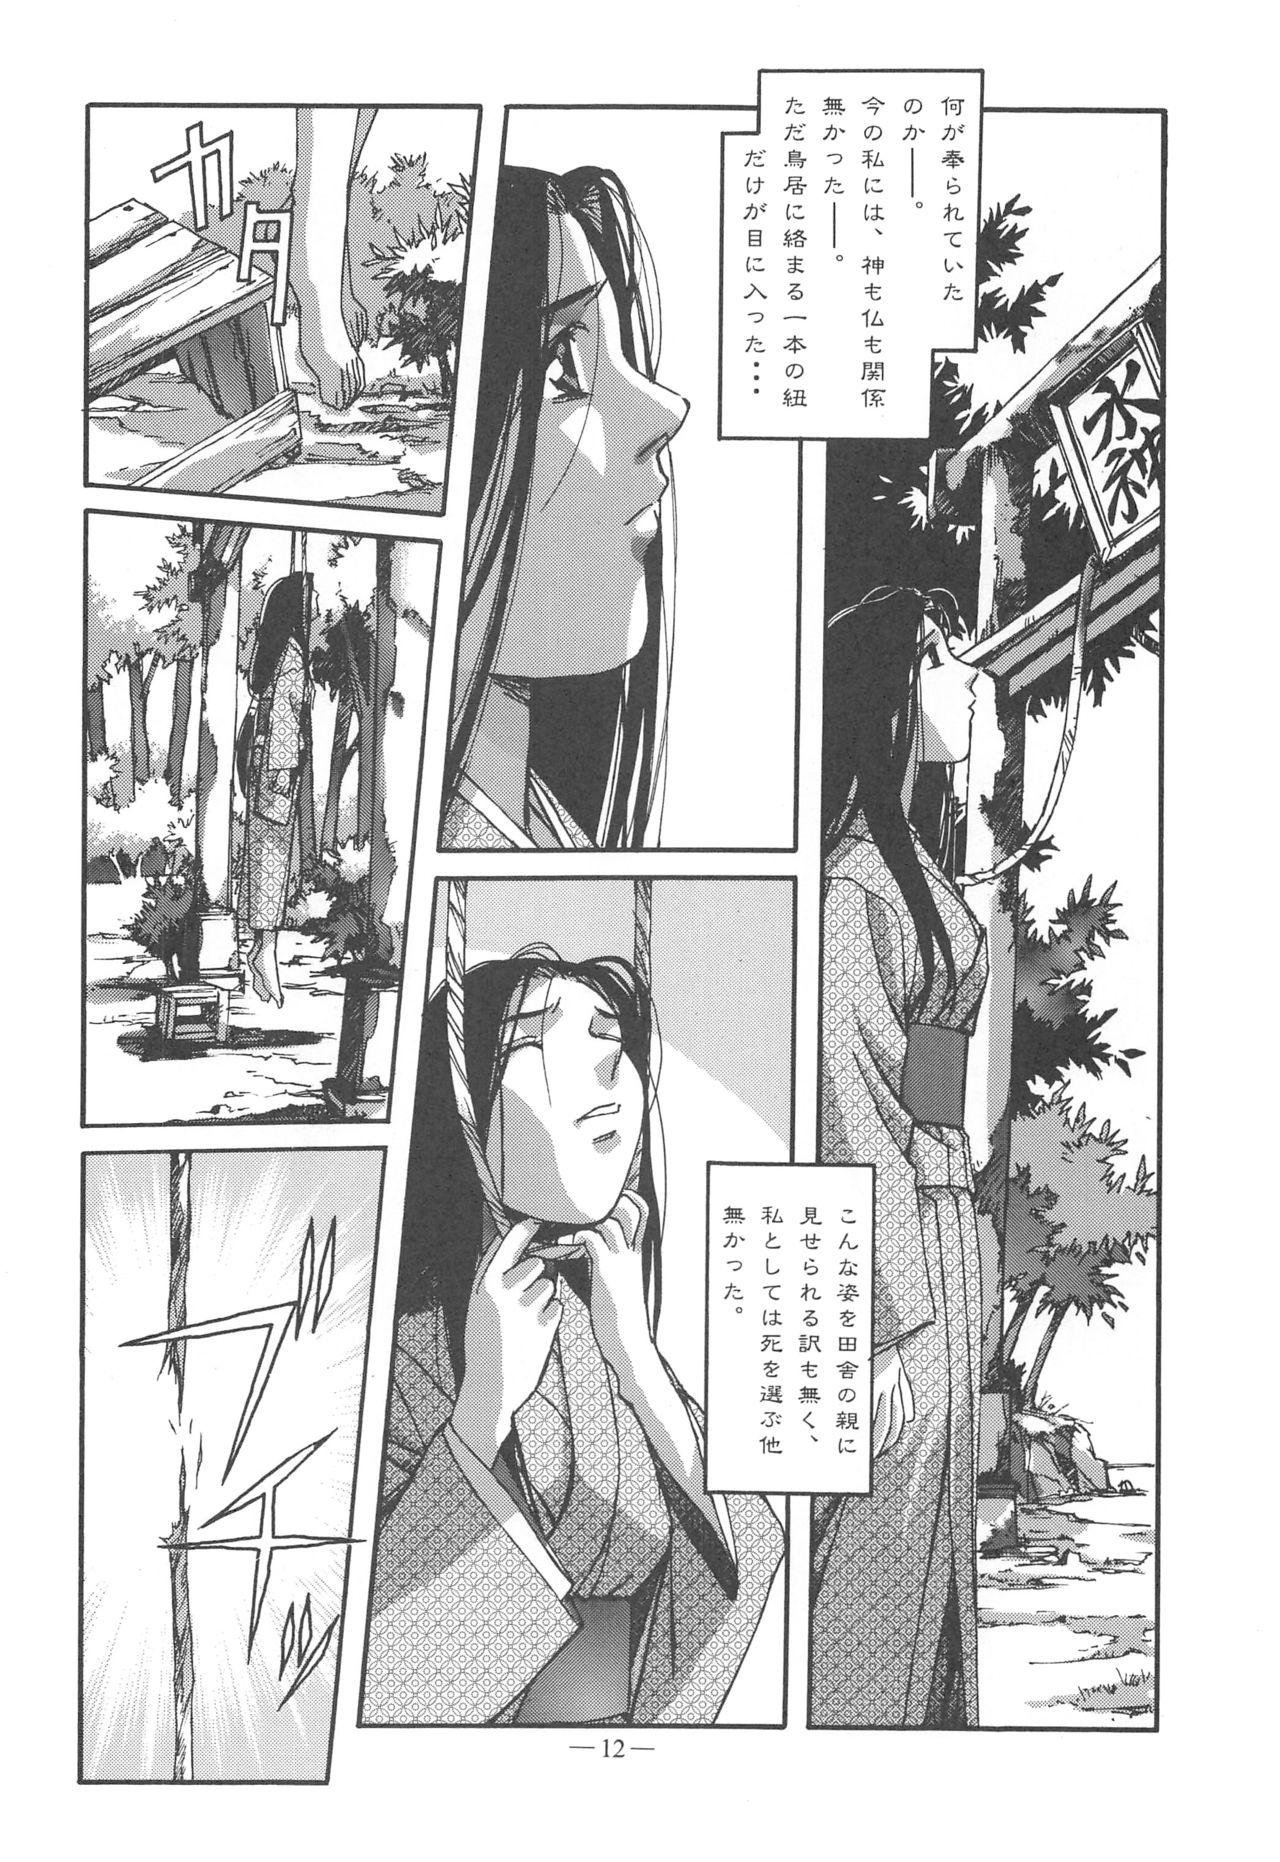 Otonano Do-wa Vol. 11 10